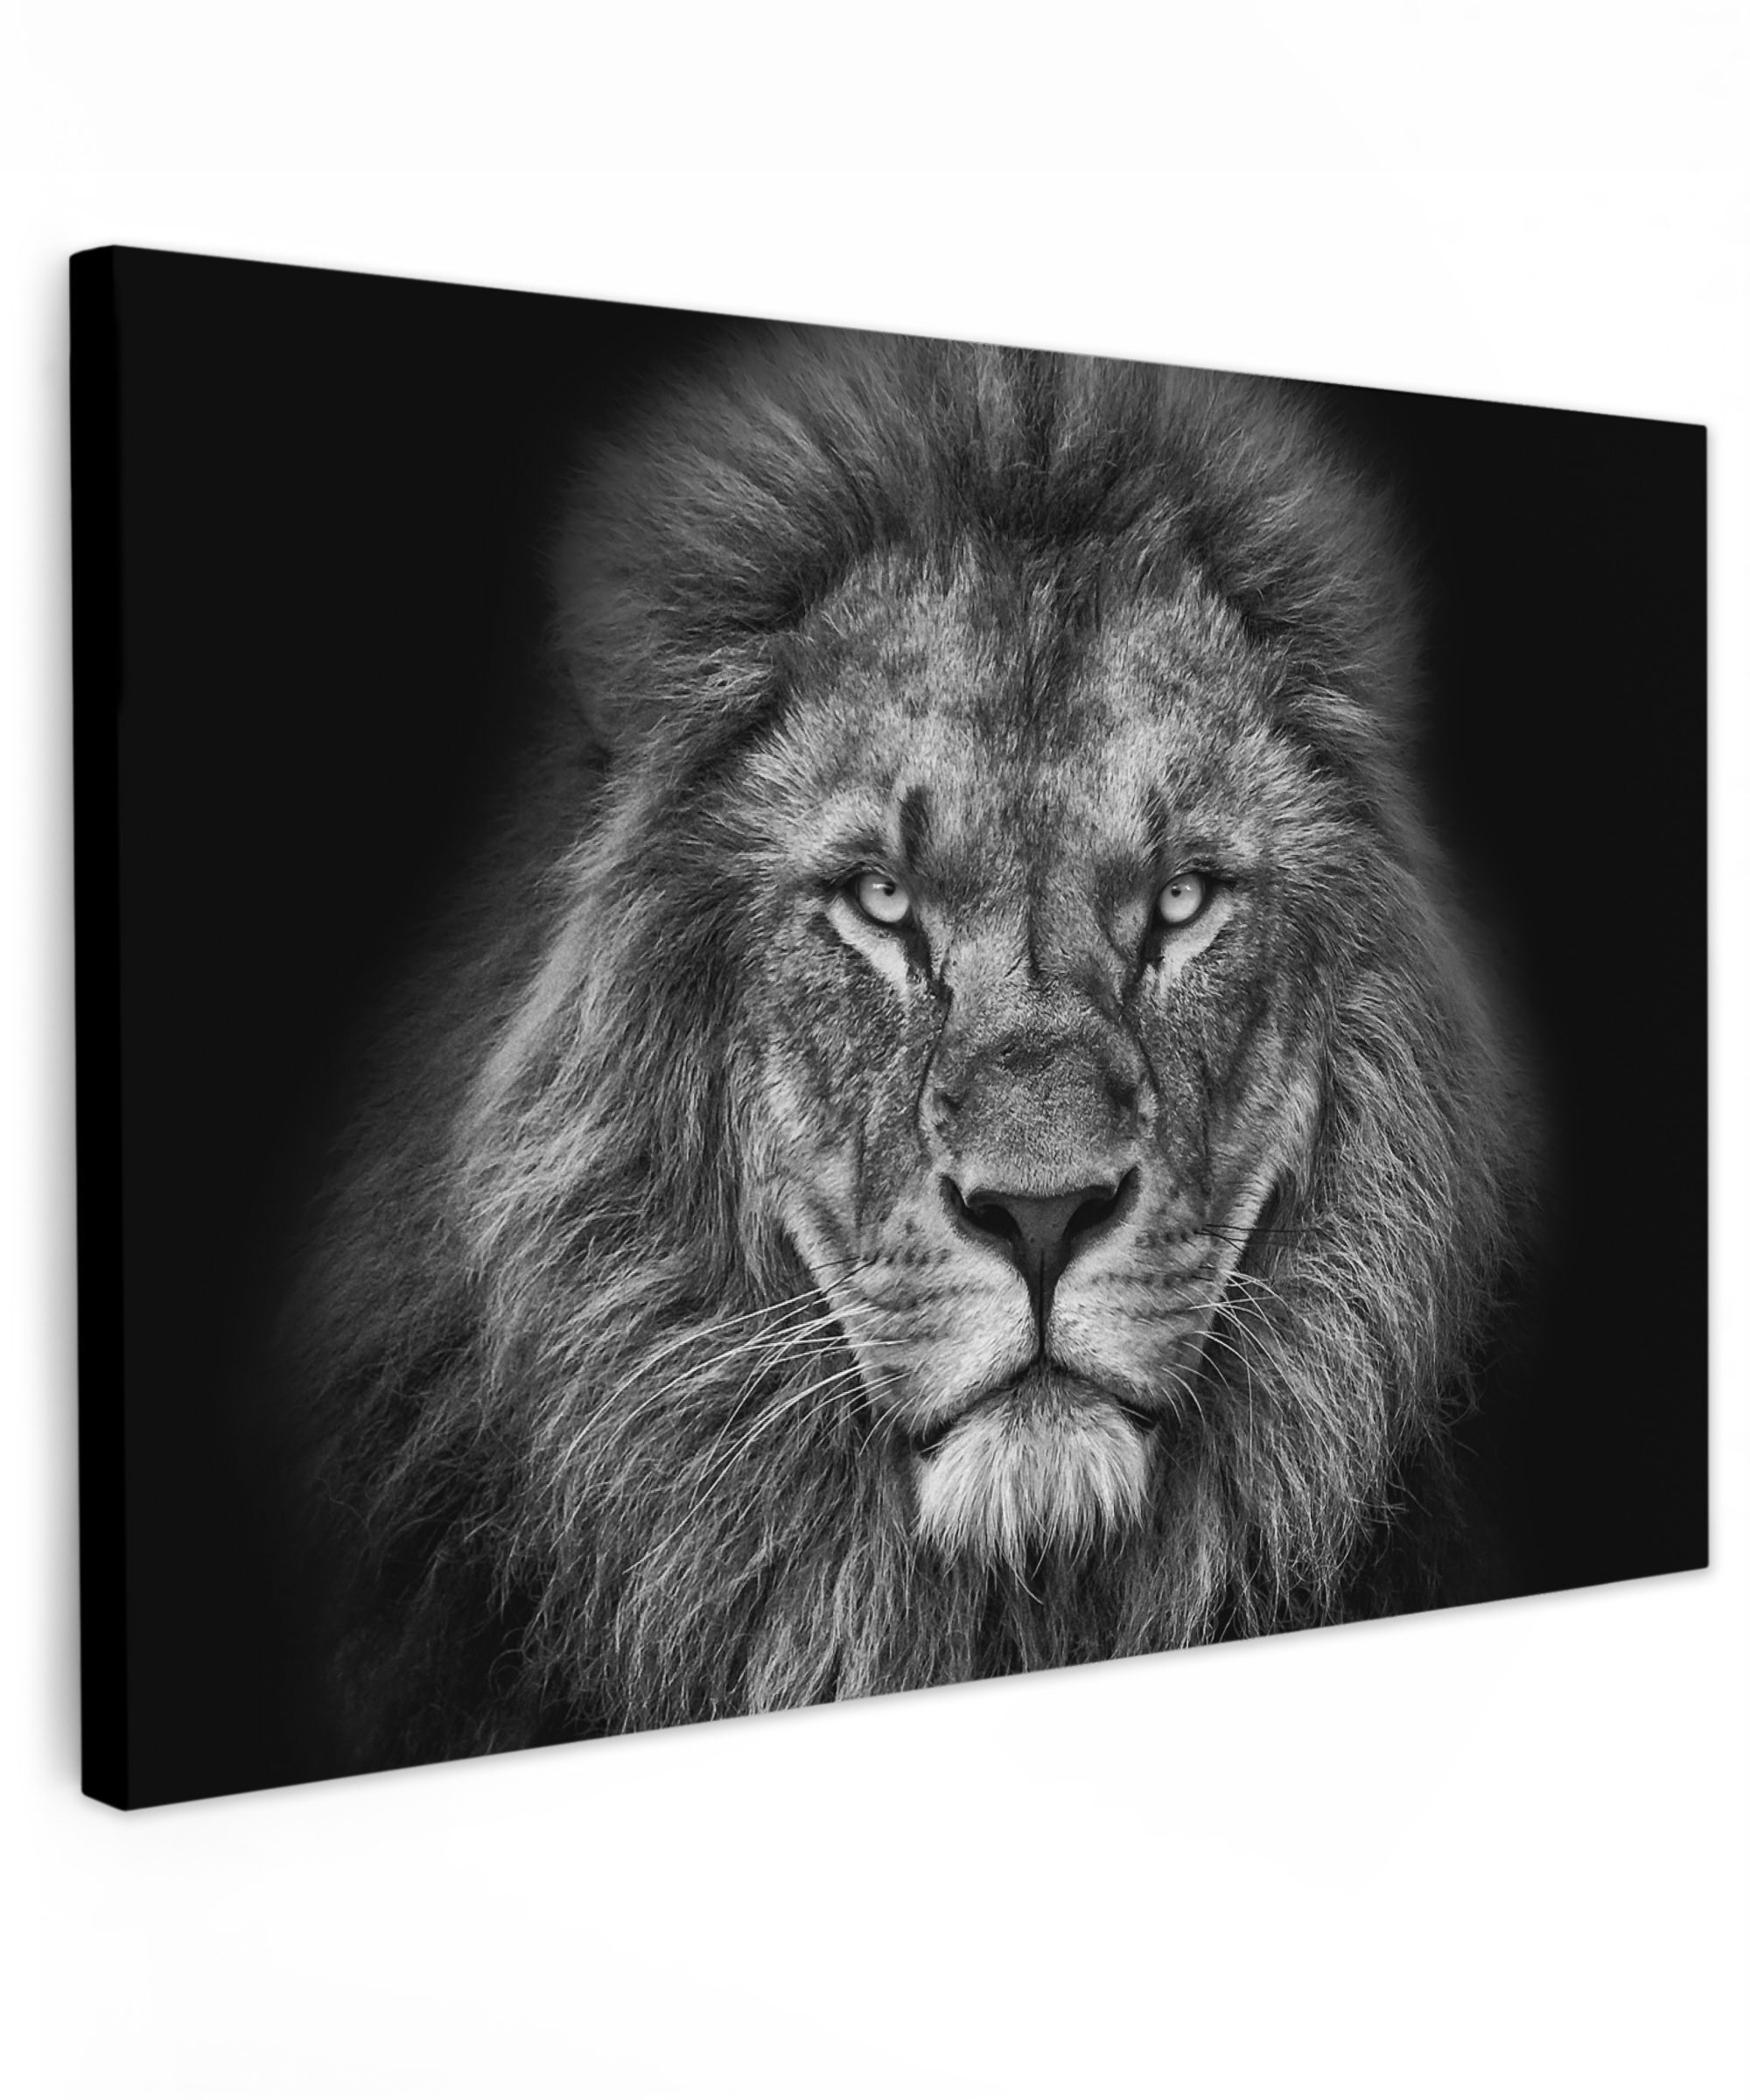 Tableau sur toile - Animaux - Lion - Noir - Blanc - Portrait